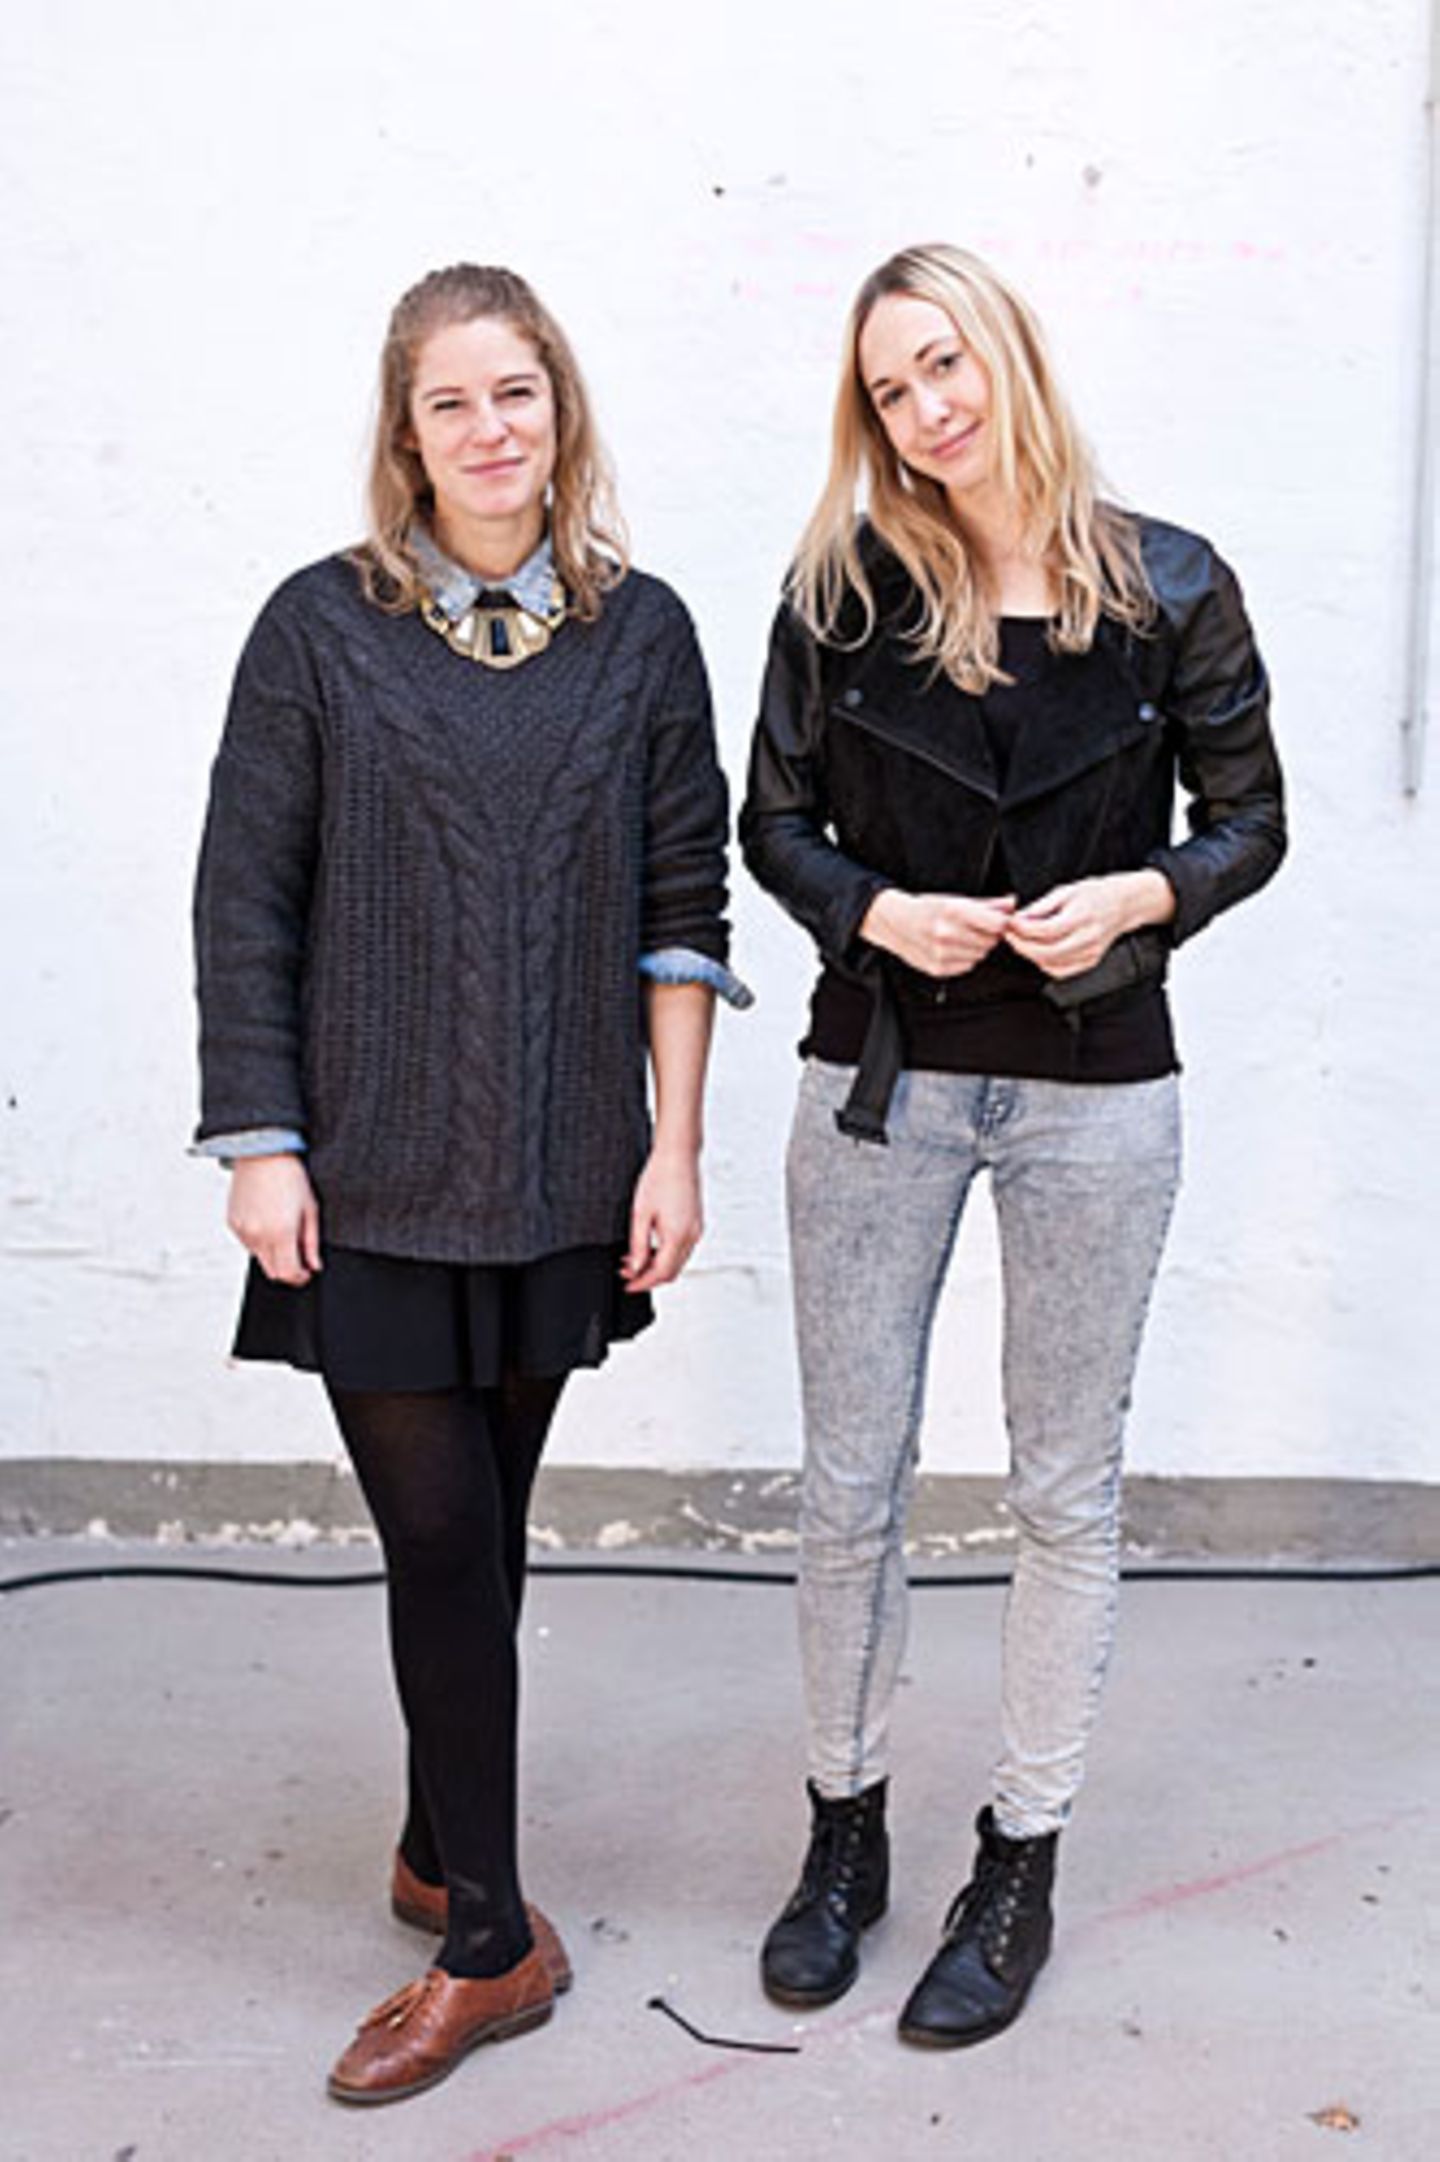 "Mach's dir selbst" - das ist das Motto von Katrin (links) und Katja. Während des Studiums haben die beiden Grafikdesignerinnen die erste Ausgabe ihres unabhängigen DIY-Magazins MakeMake entwickelt, momentan arbeiten sie an der dritten Ausgabe. Und dann? Erscheint es hoffentlich bald regelmäßig.